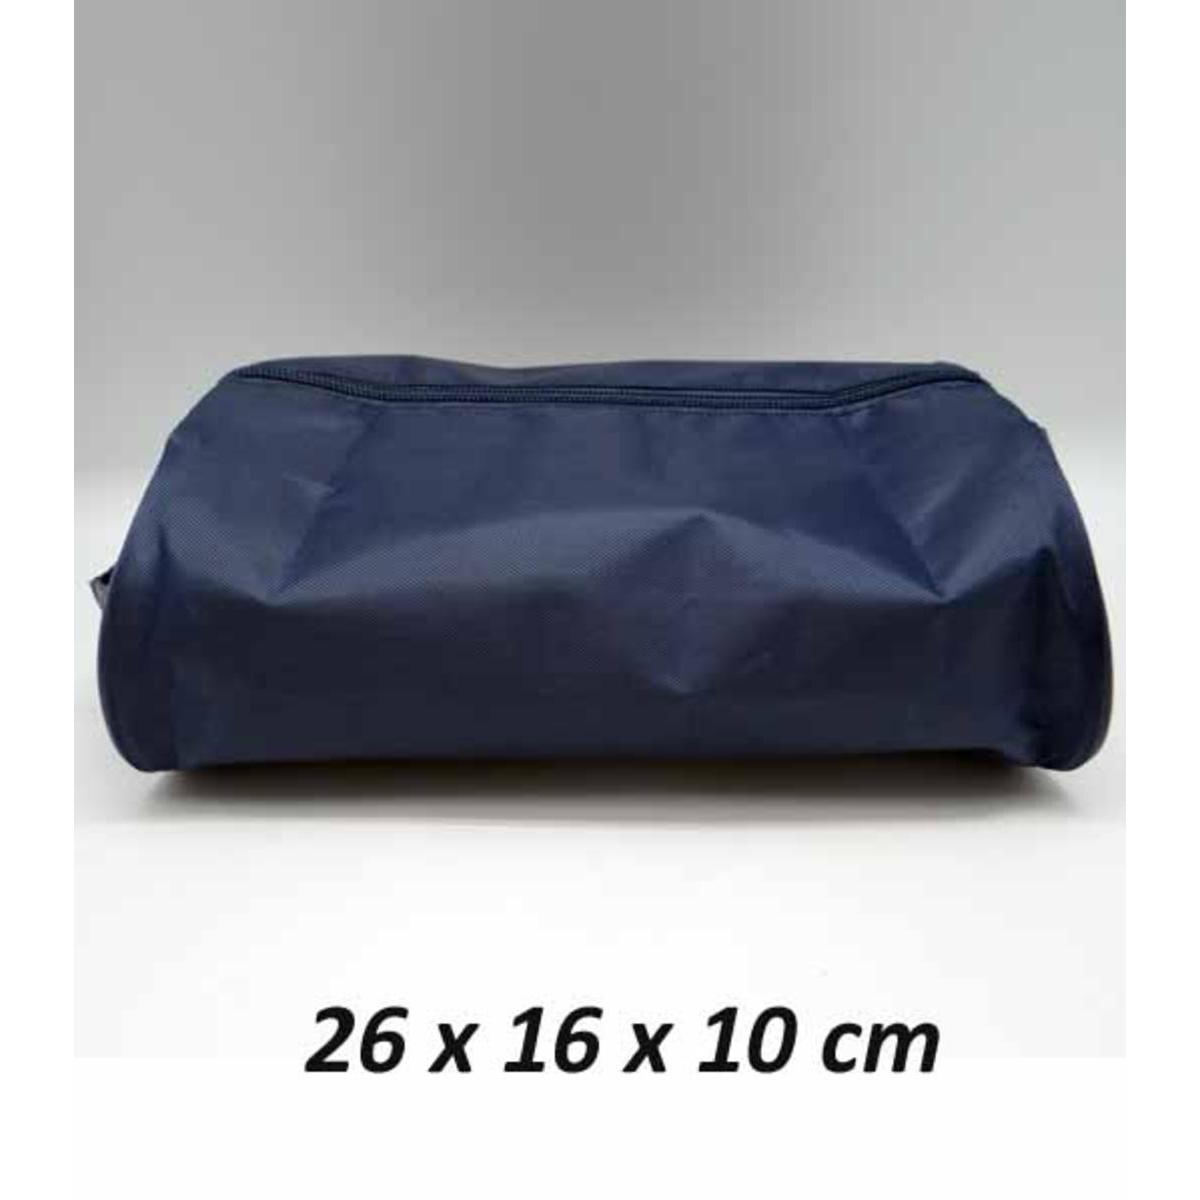 Trousse de toilette - L 27 x H 10 x l 16 cm - Différents coloris - Bleu